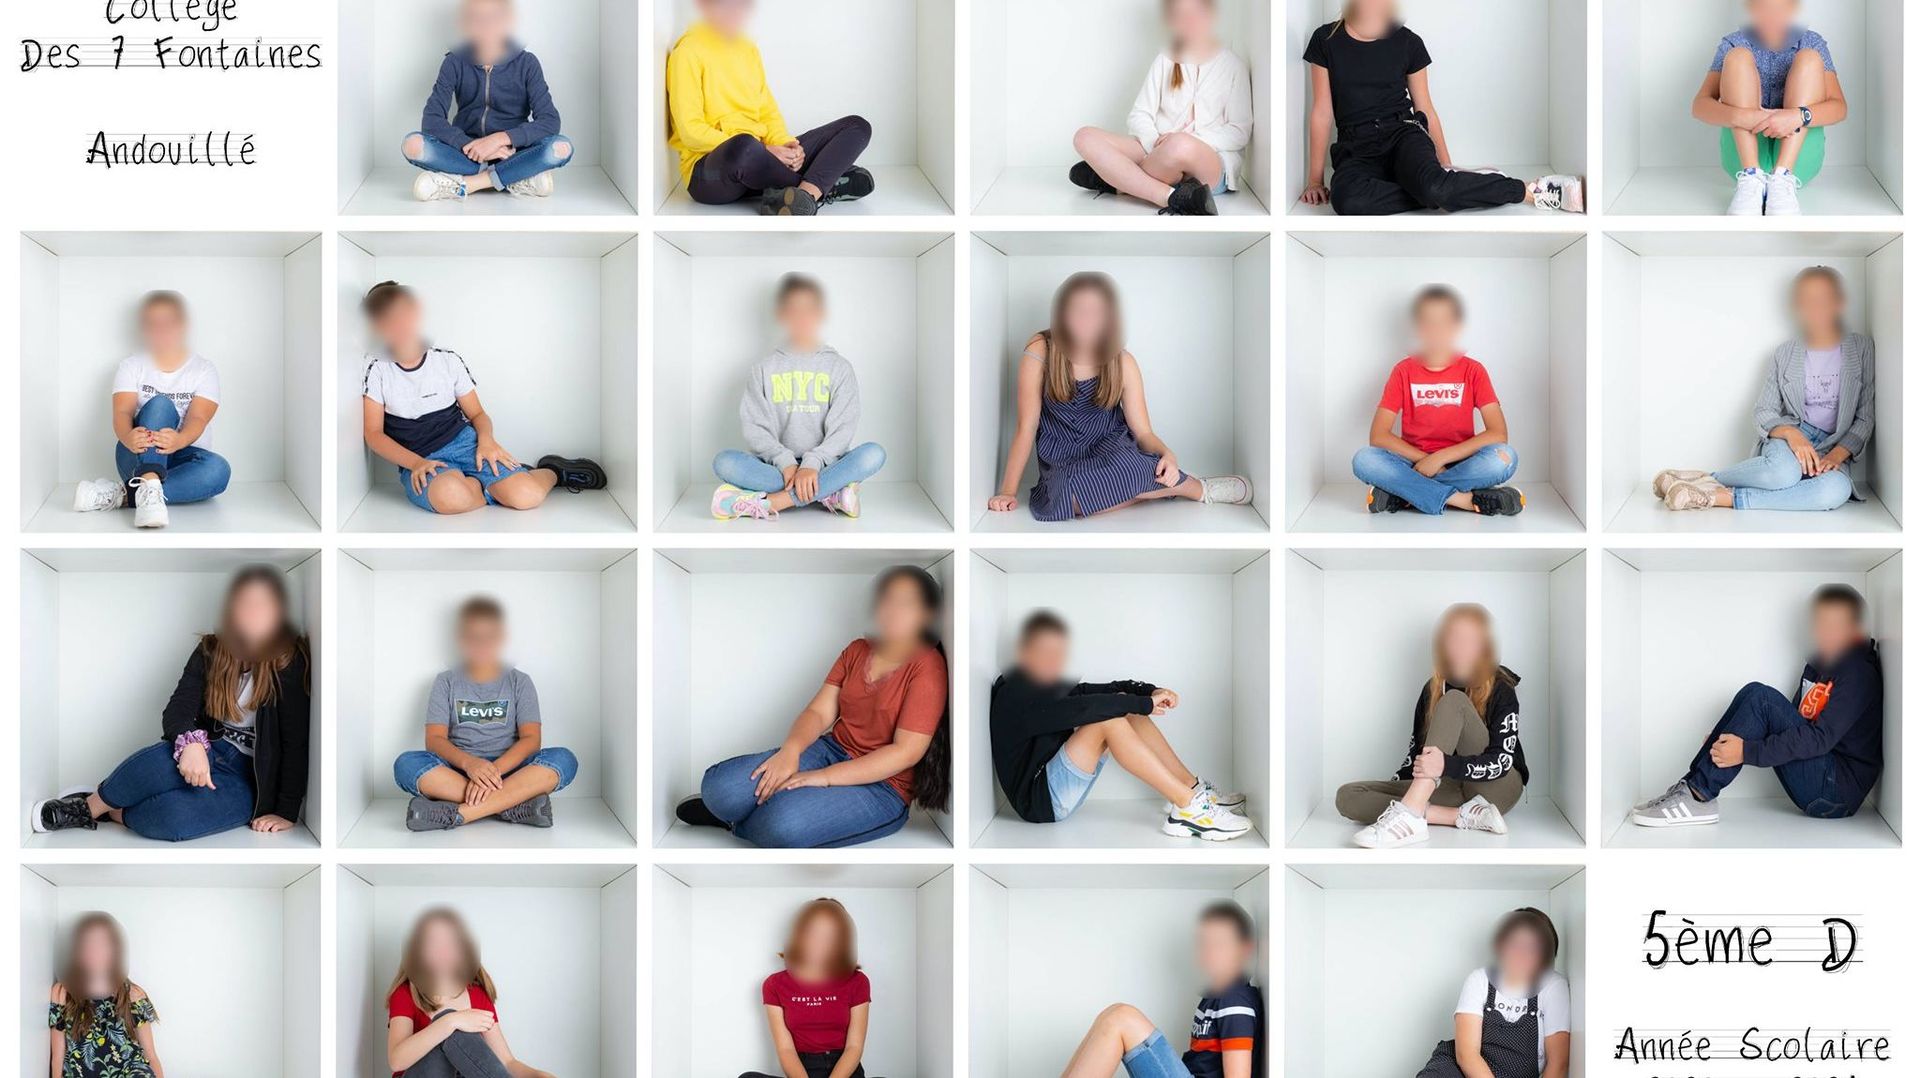 Et si la photo de classe de 2020 de votre enfant était un peu différente ?